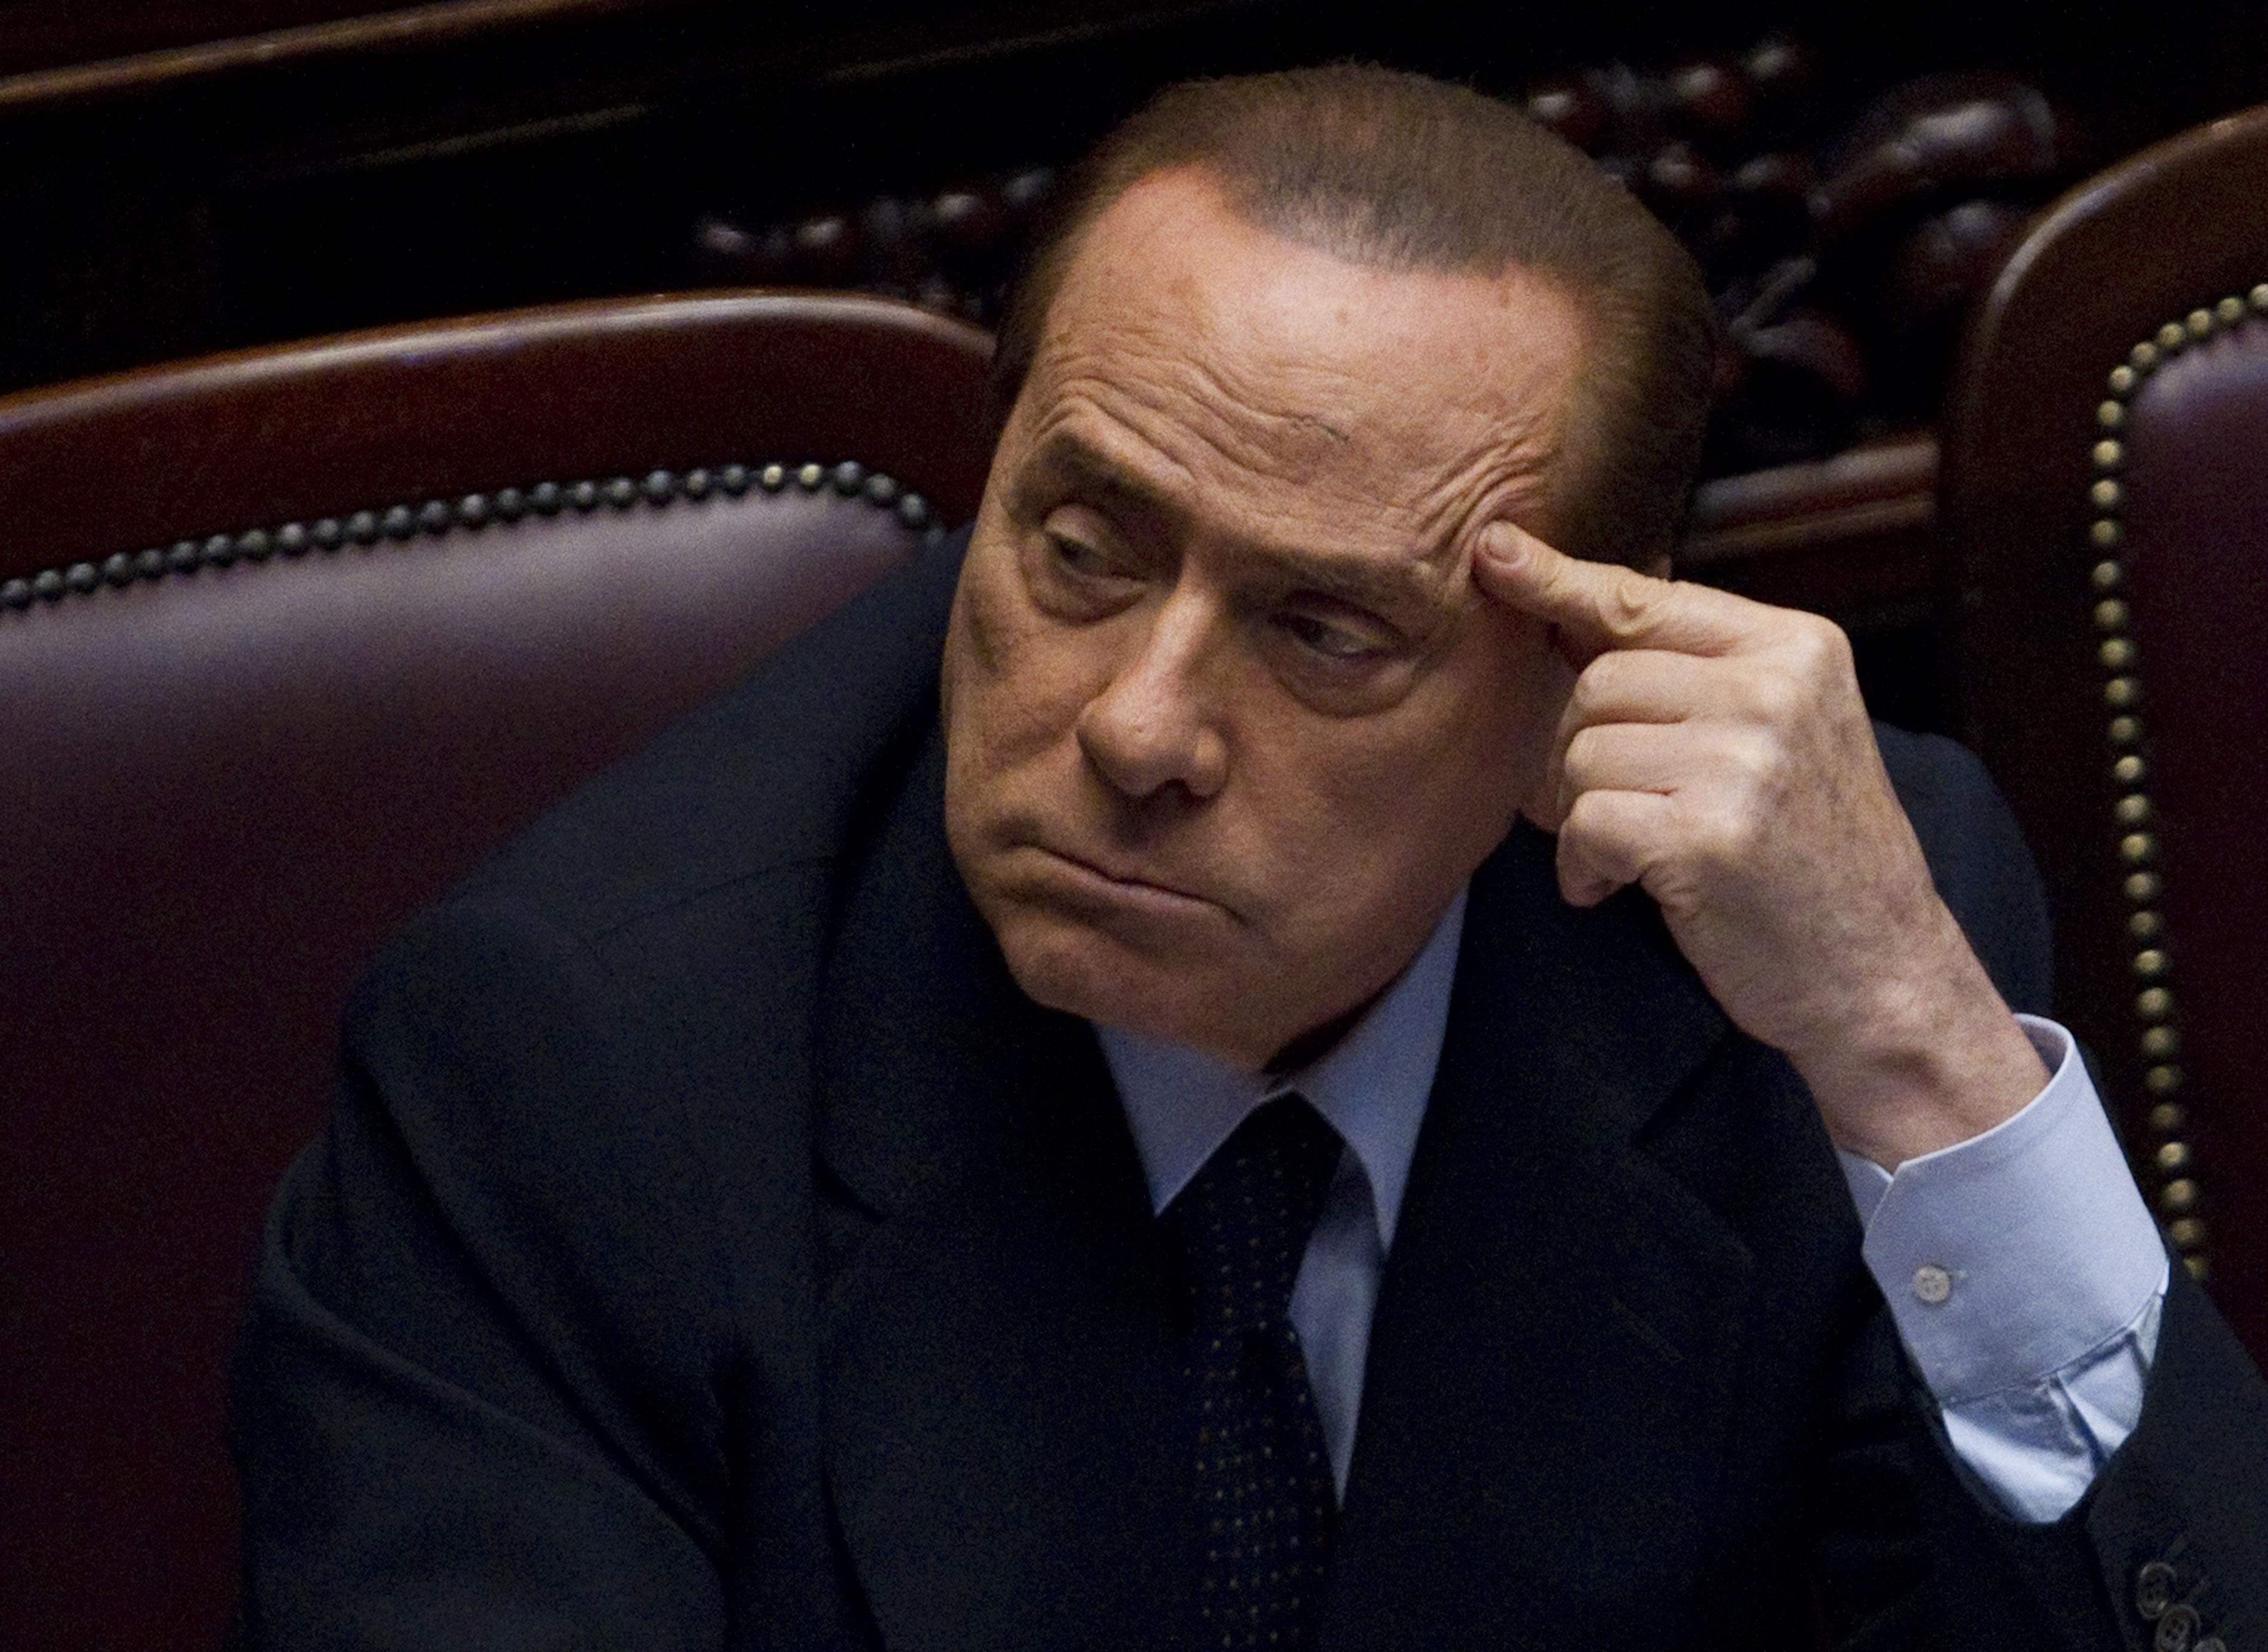 Sex- och samlevnad, Prostitution, Utpressning, Köp av sexuell tjänst, Politik, Italien, Brott och straff, Silvio Berlusconi, Berlusconi, Sexualbrott